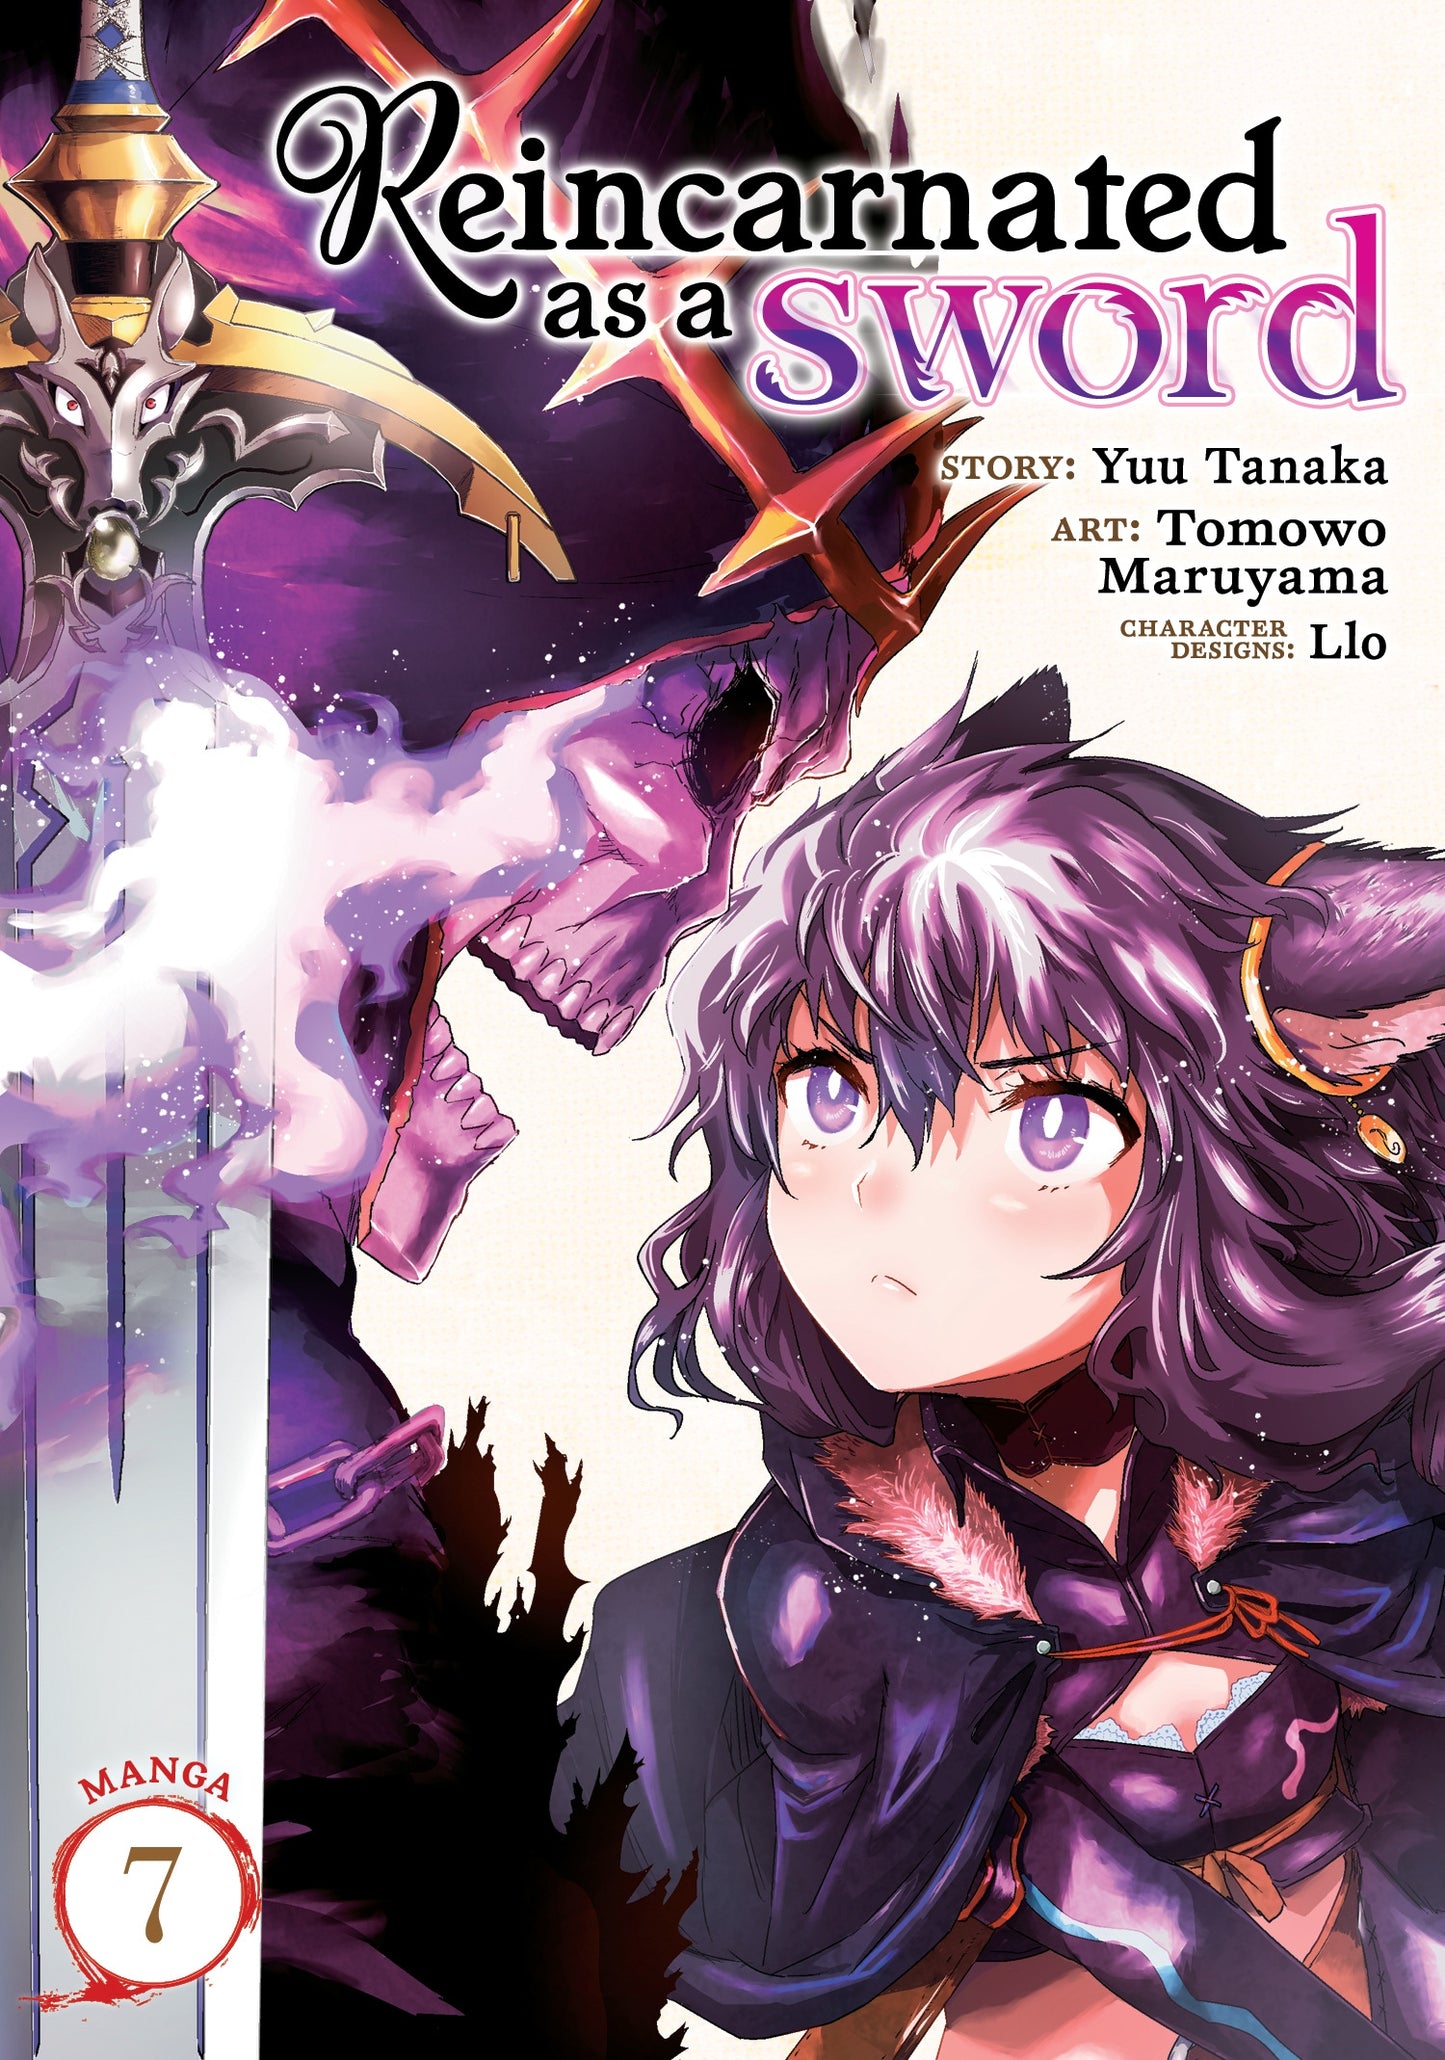 Reincarnated as a Sword (Manga) Vol. 7 - Manga Warehouse